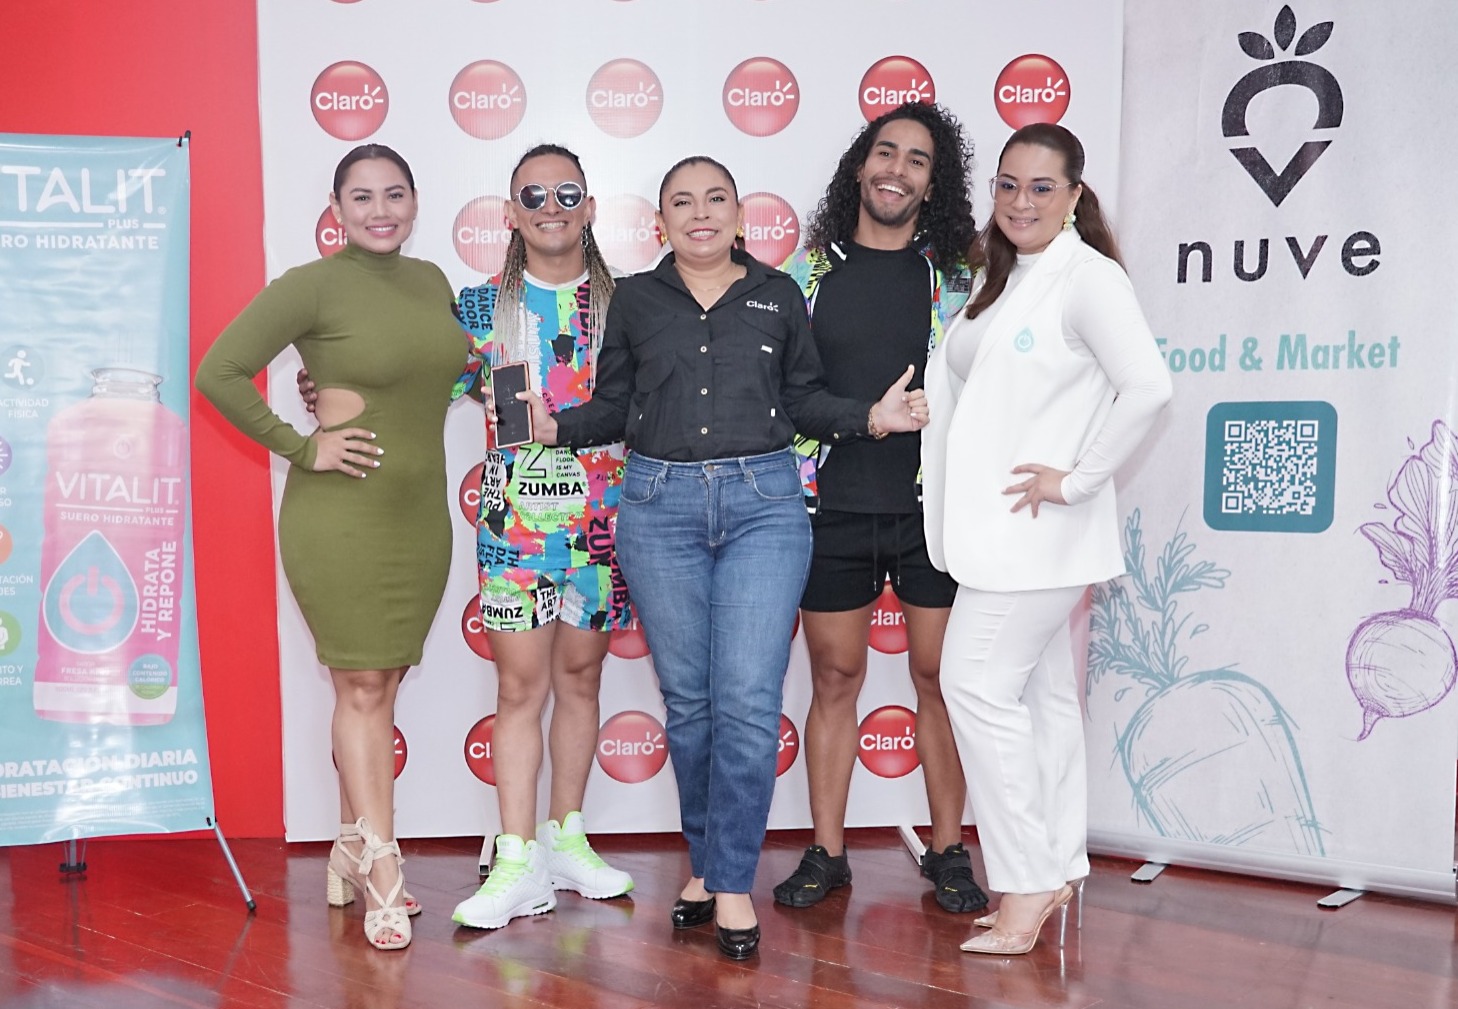 Claro Nicaragua en el Zumba Fest Internacional, Promoviendo Salud y Bienestar